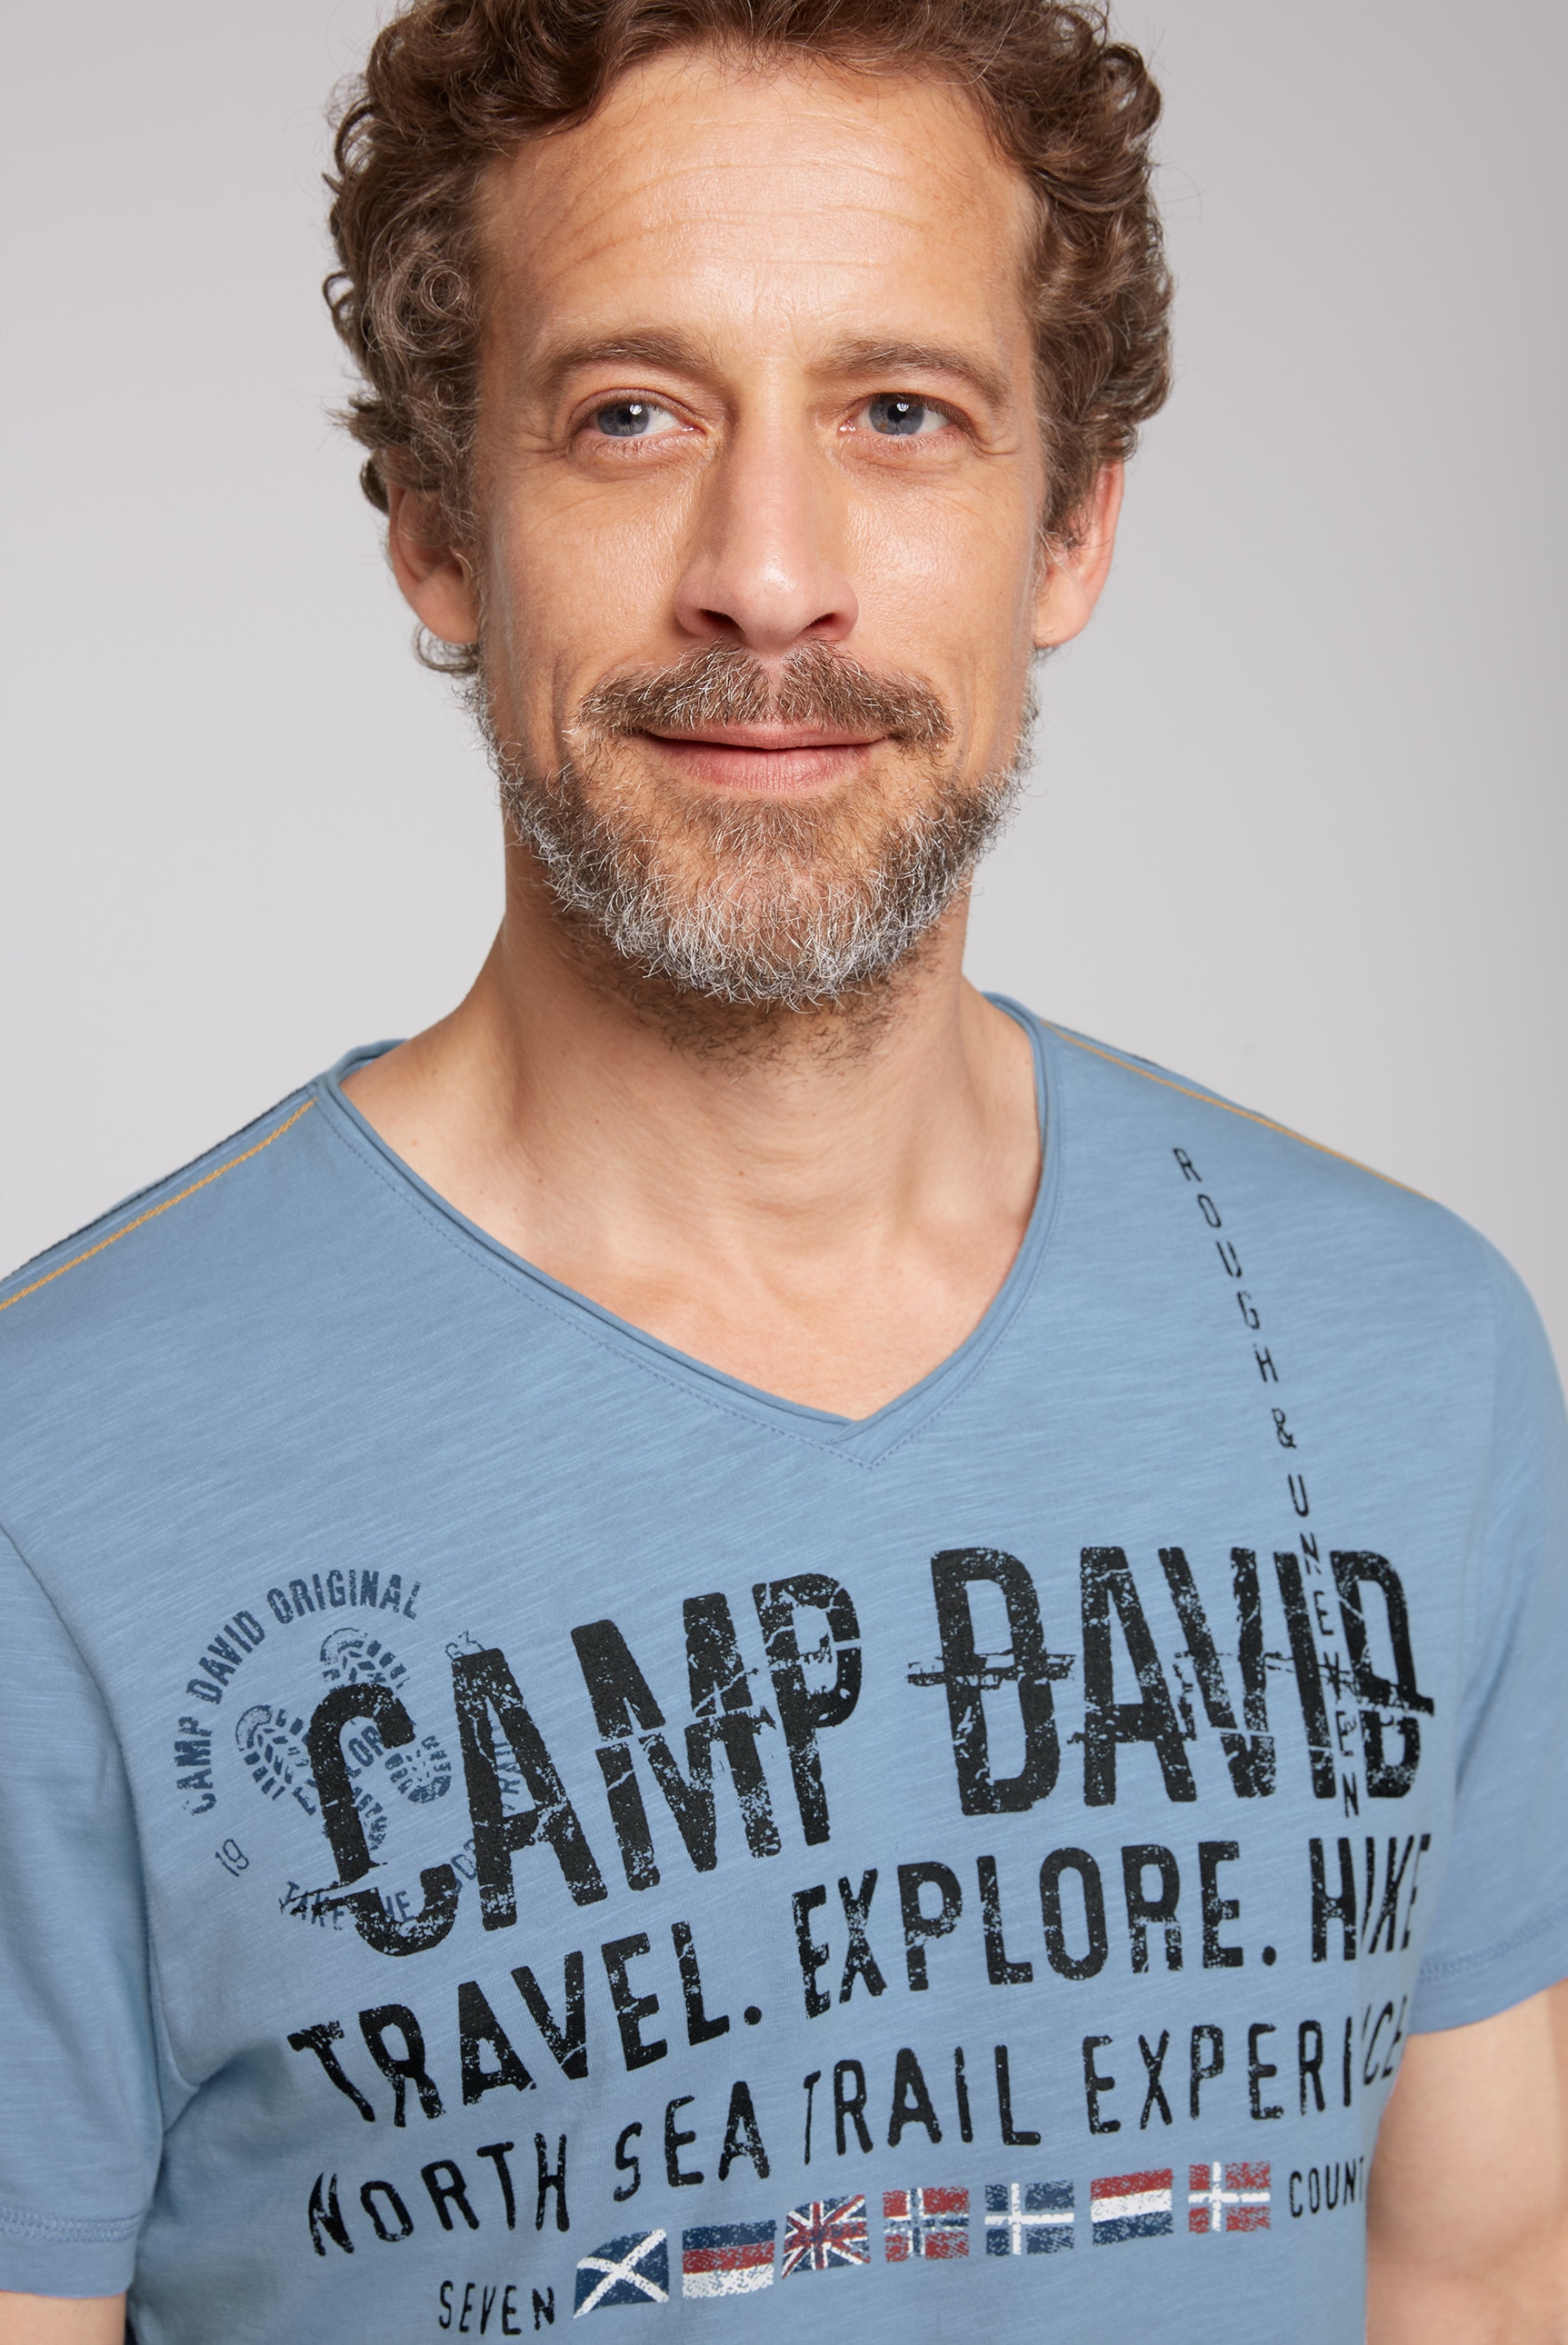 CAMP DAVID V-Shirt, mit offener Kante am Ausschnitt